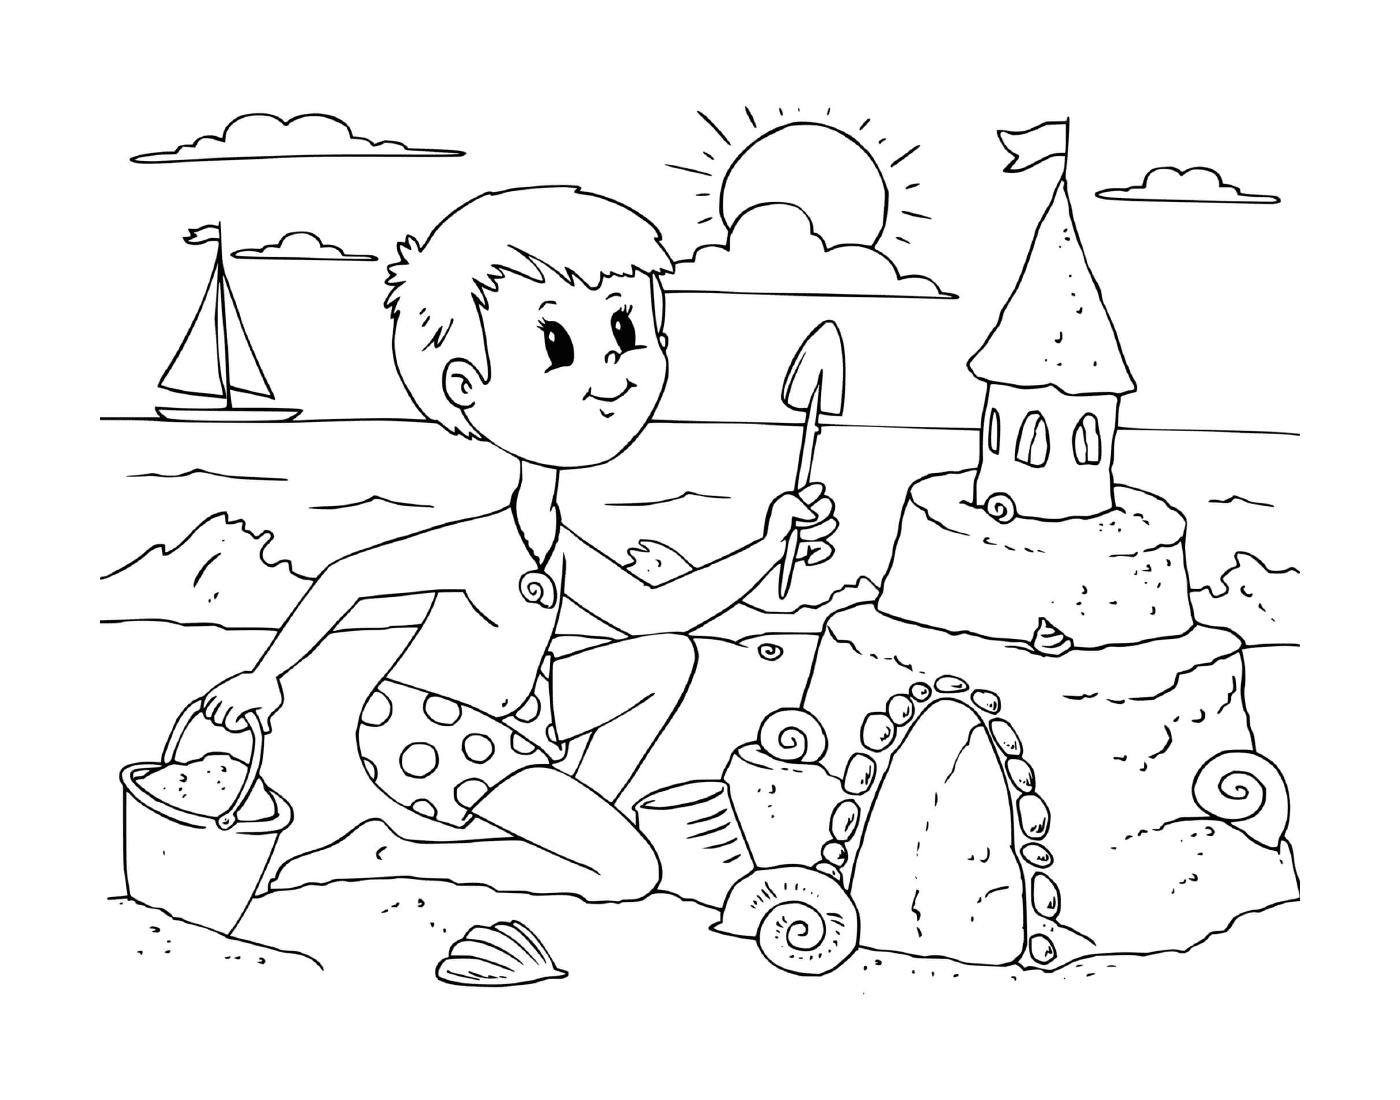  Un niño construye un castillo de arena en la playa 